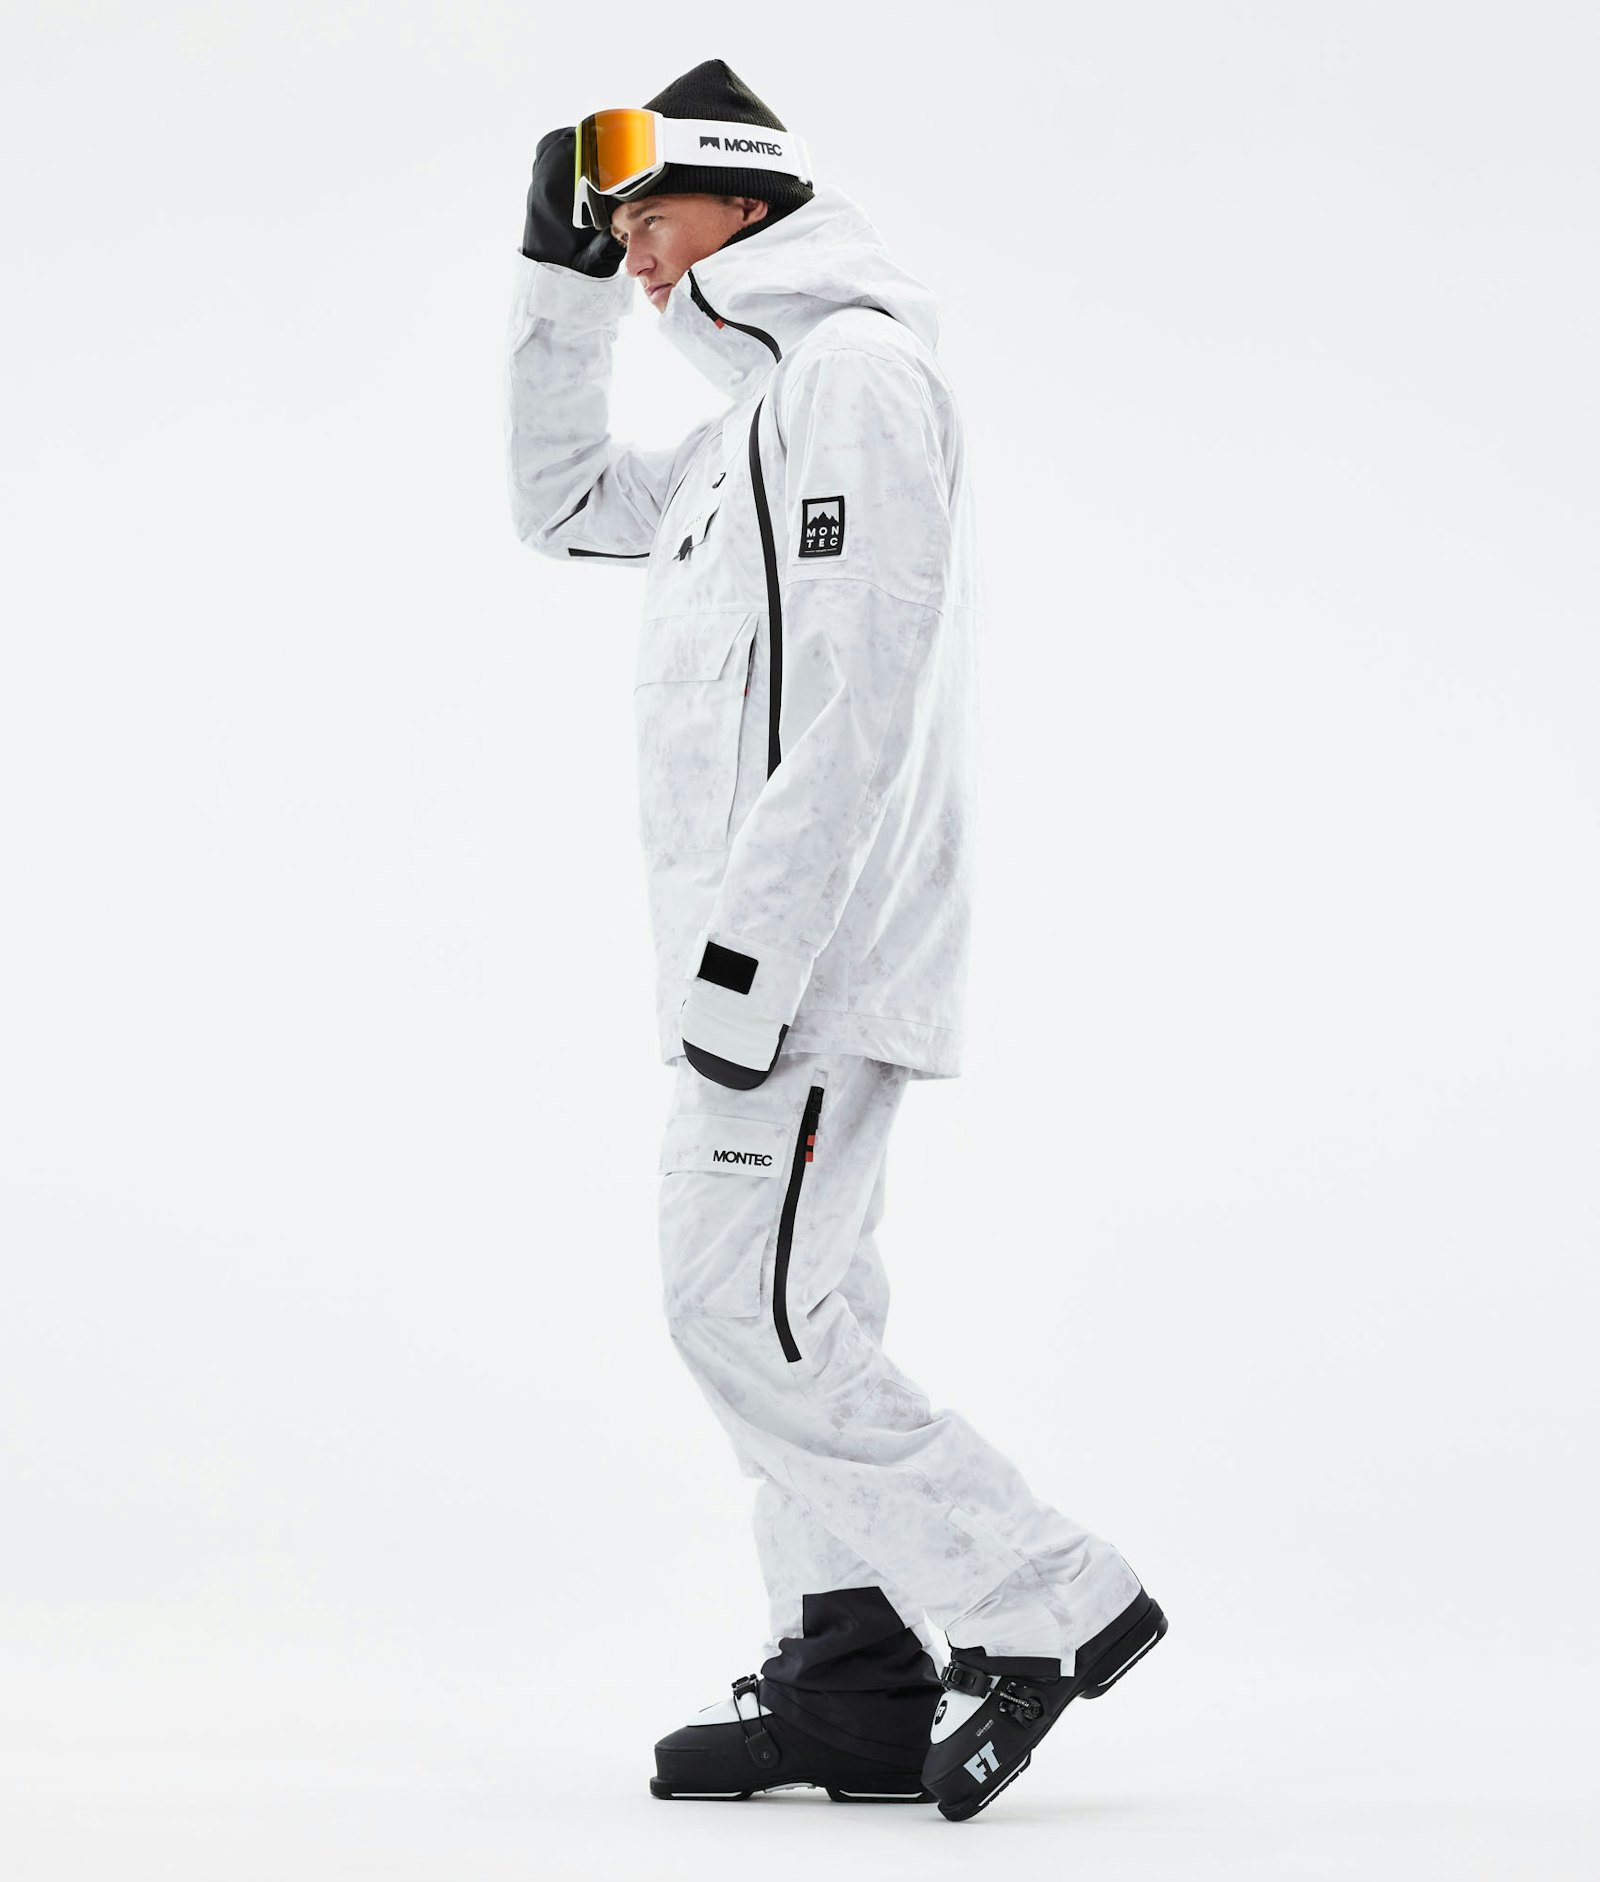 Montec Doom 2021 Ski Jacket Men White Tiedye